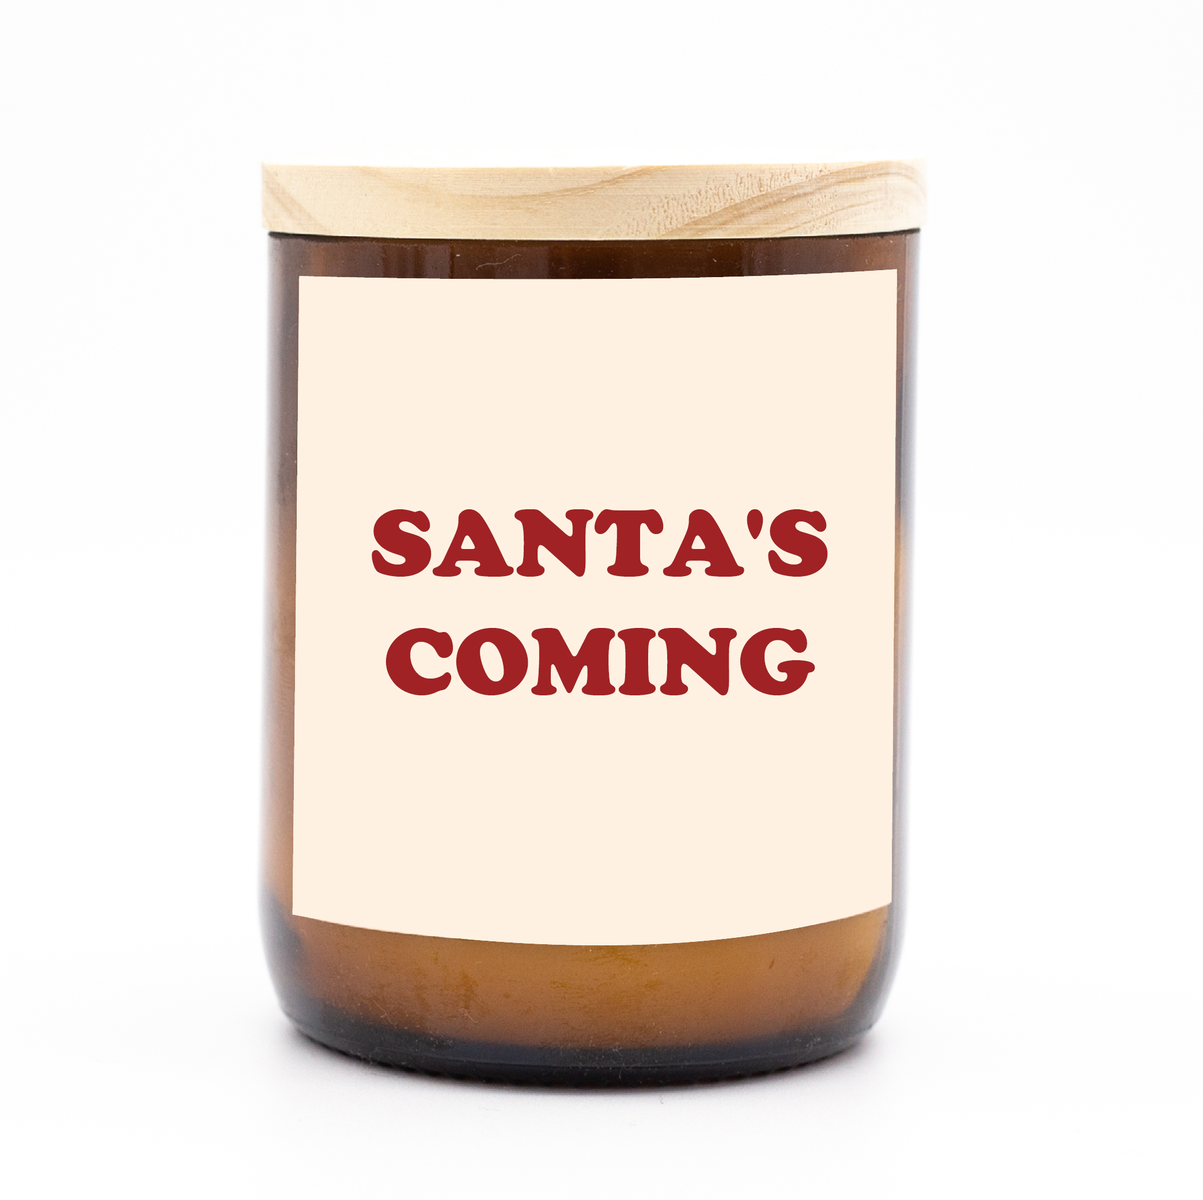 Santas Coming Candle